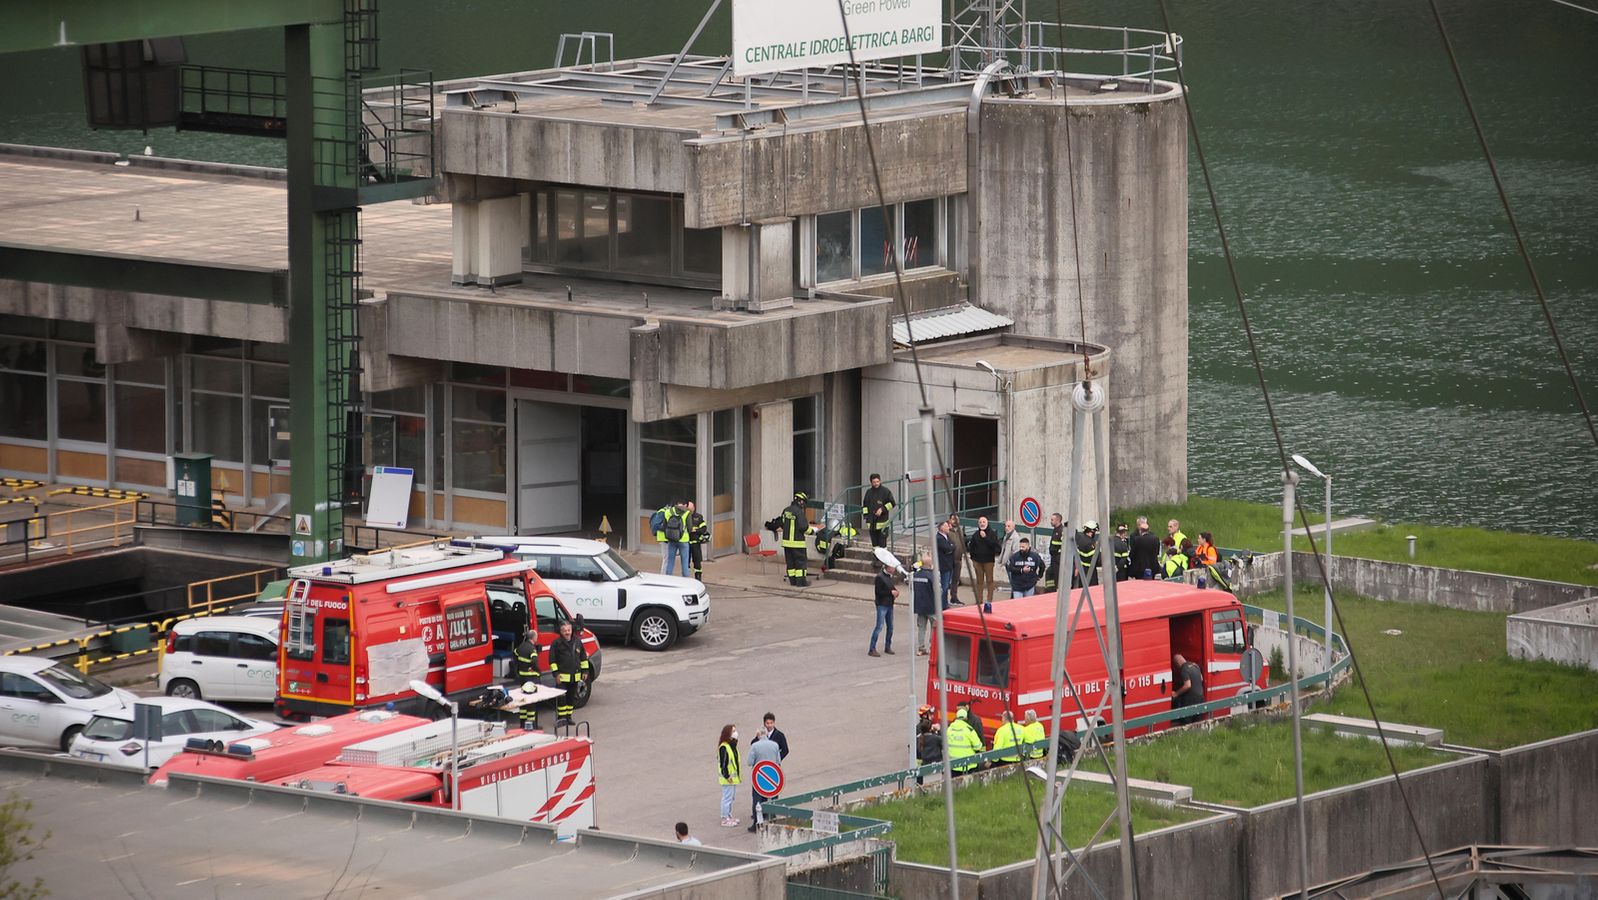 Diversi i morti nell'esplosione di una centrale idroelettrica italiana